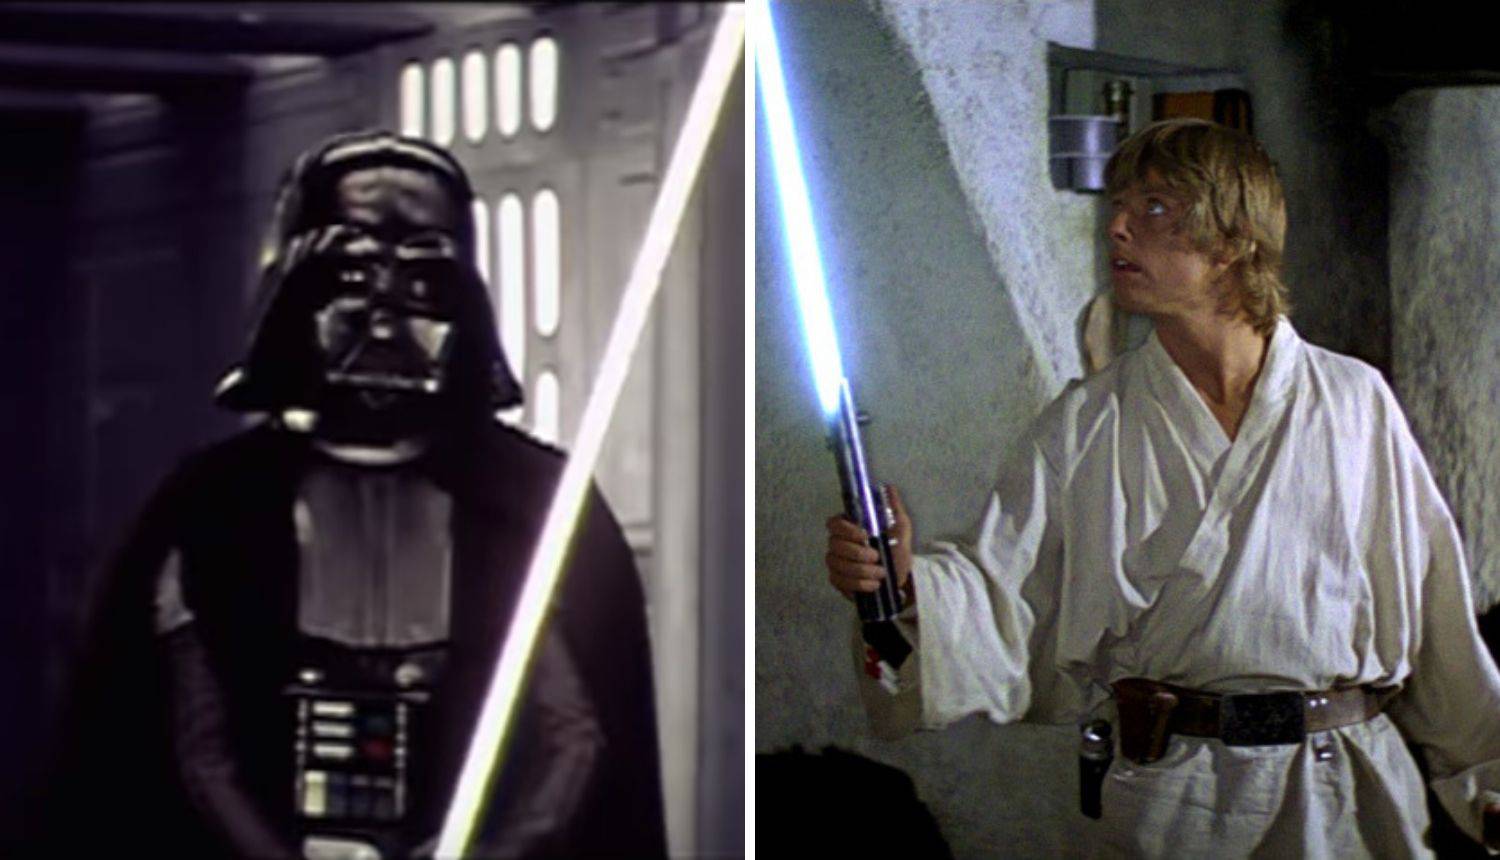 Kolekcionari čekaju: Prodaje se svjetlosna sablja iz Star Warsa